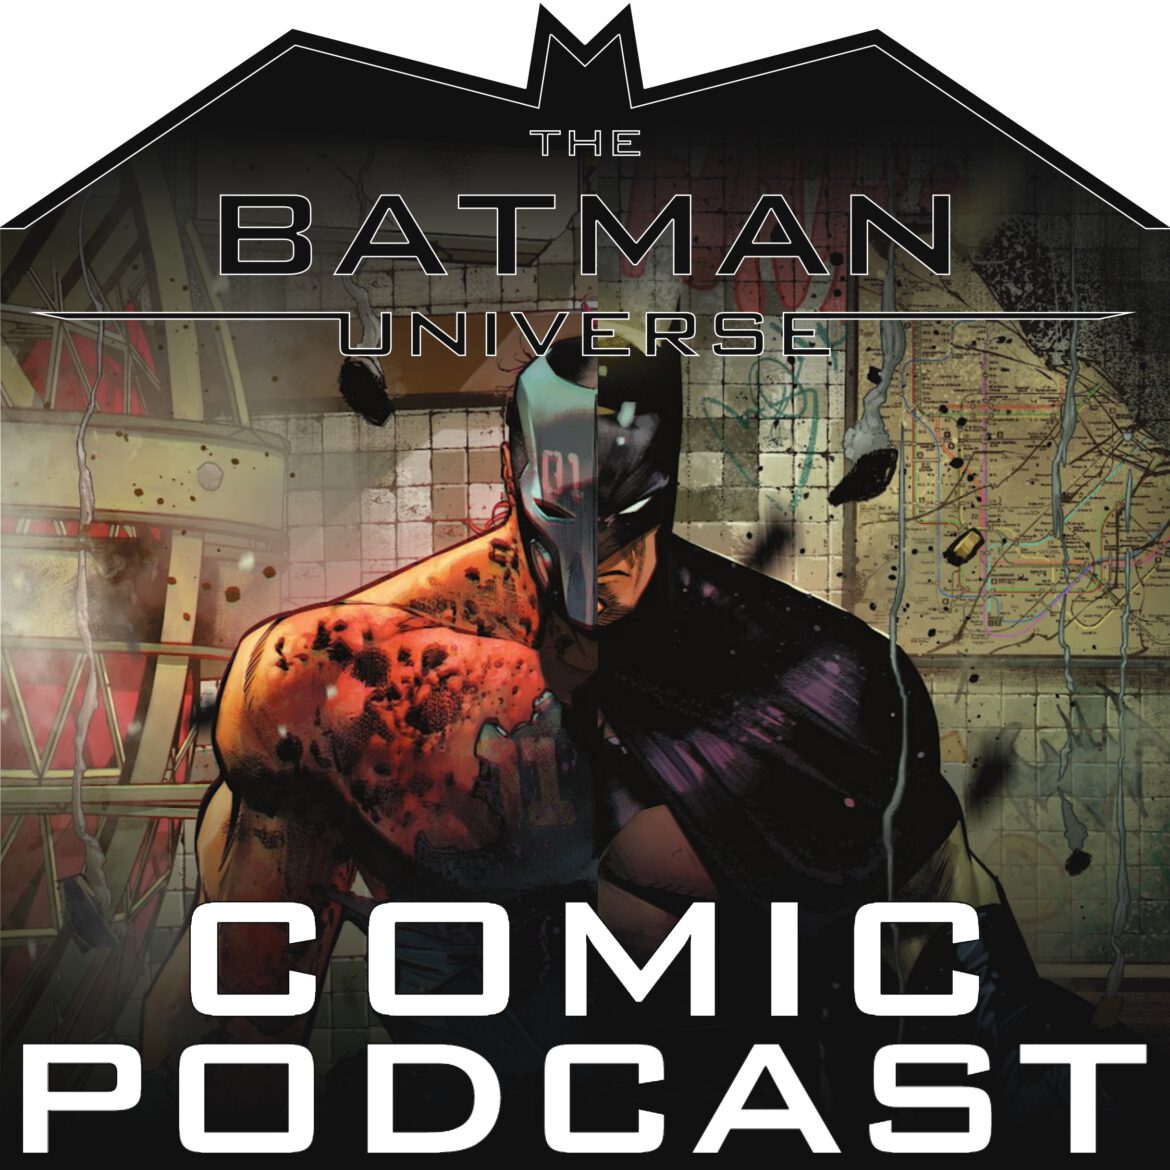 TBU Comic Podcast Season 13: Episode 21